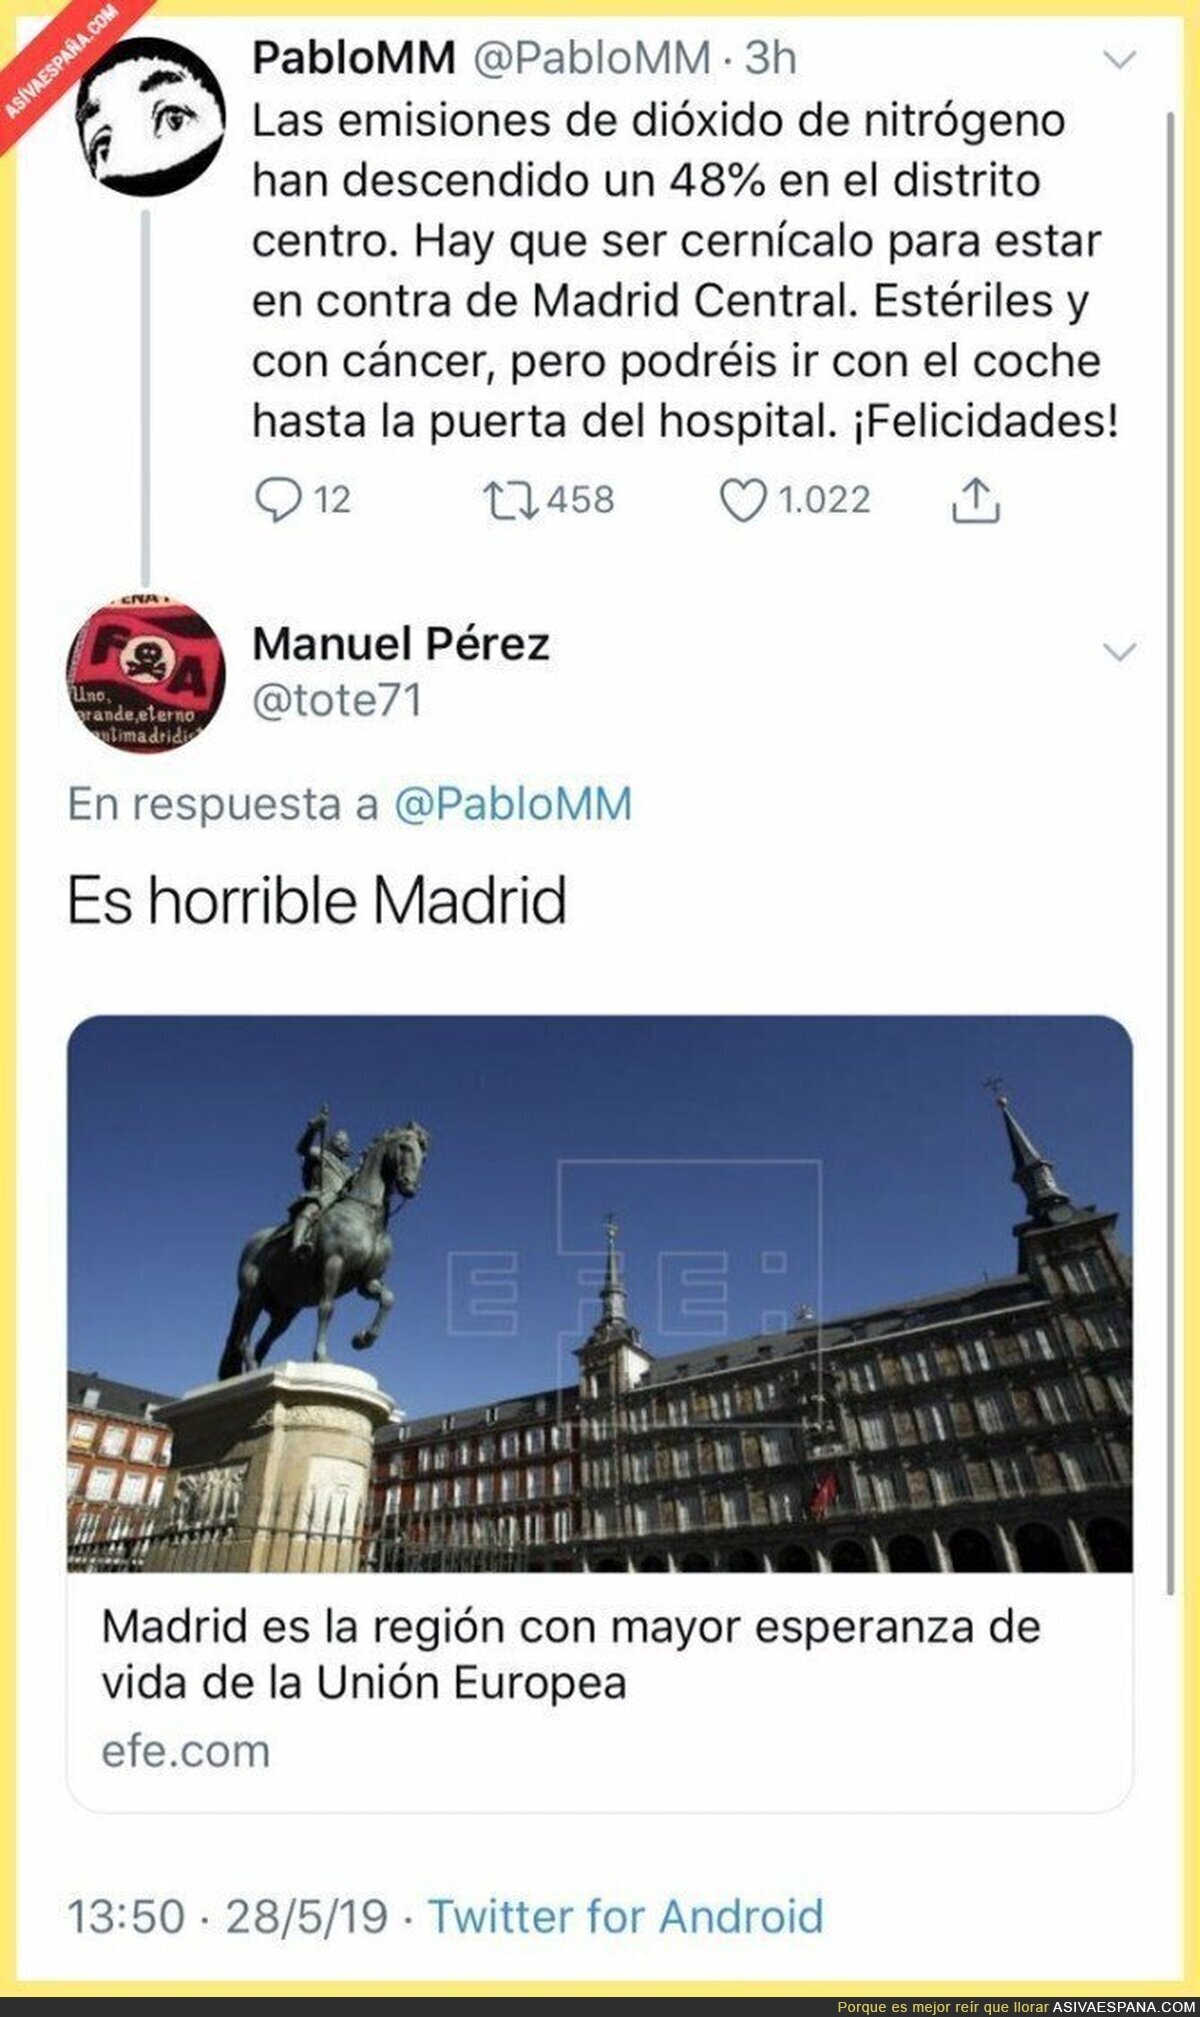 Madrid no está tan mal como algunos quieren hacer creer